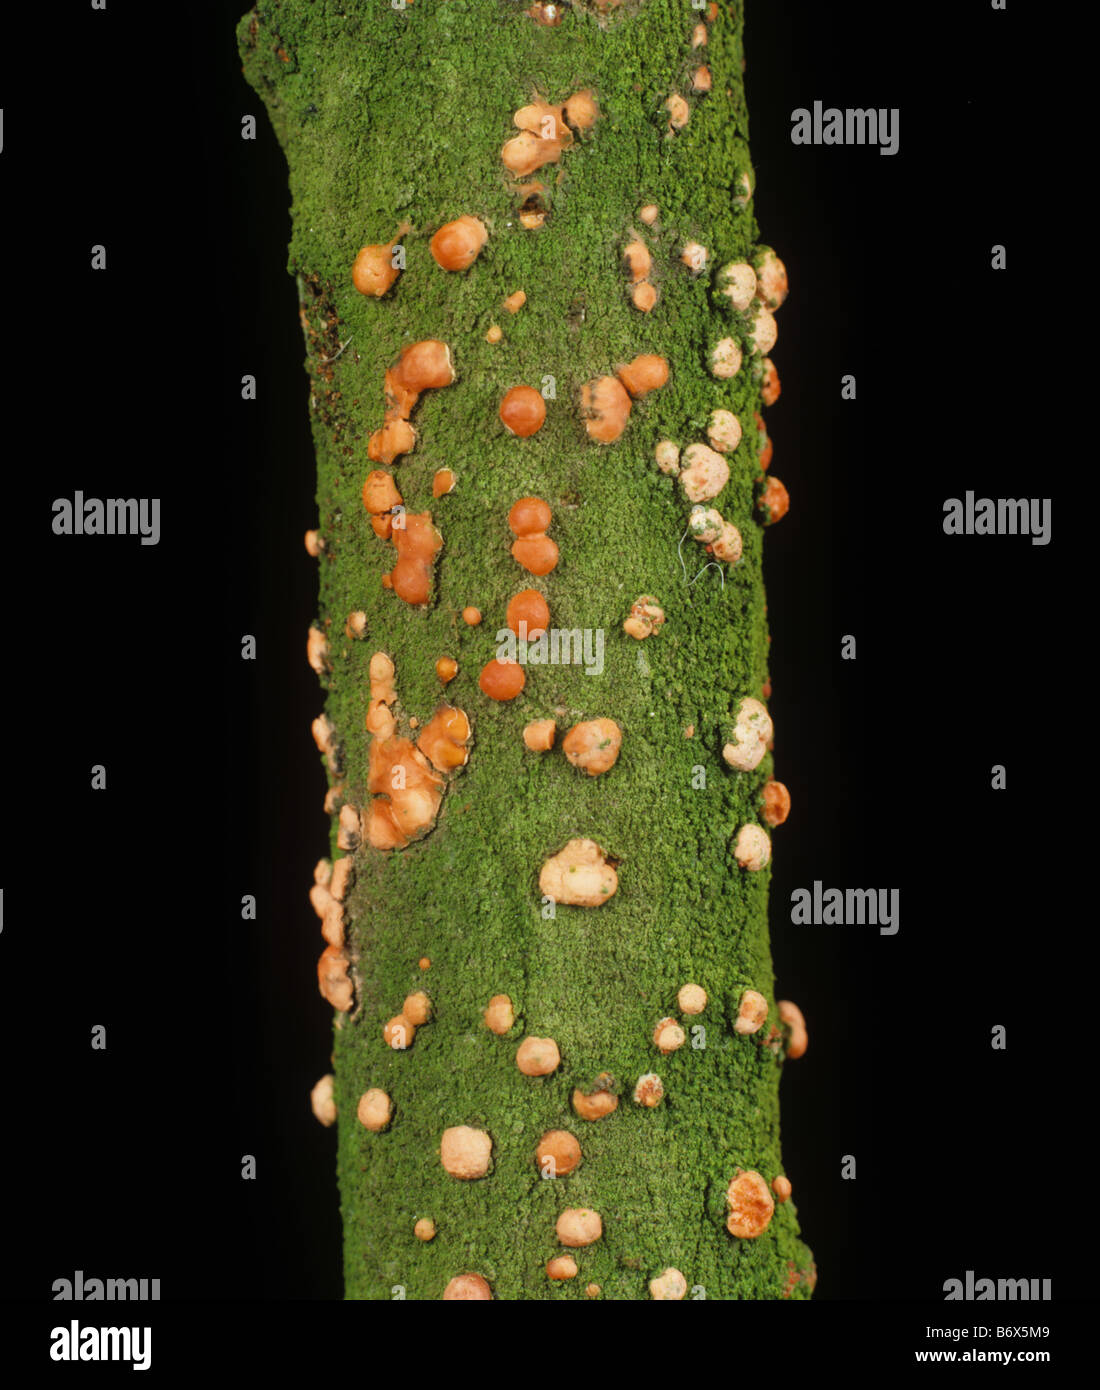 Corallienne (Nectria cinnabarina) corps de fructification rose, périthécia, de champignon saprophytique sur bois d'orme mort Banque D'Images